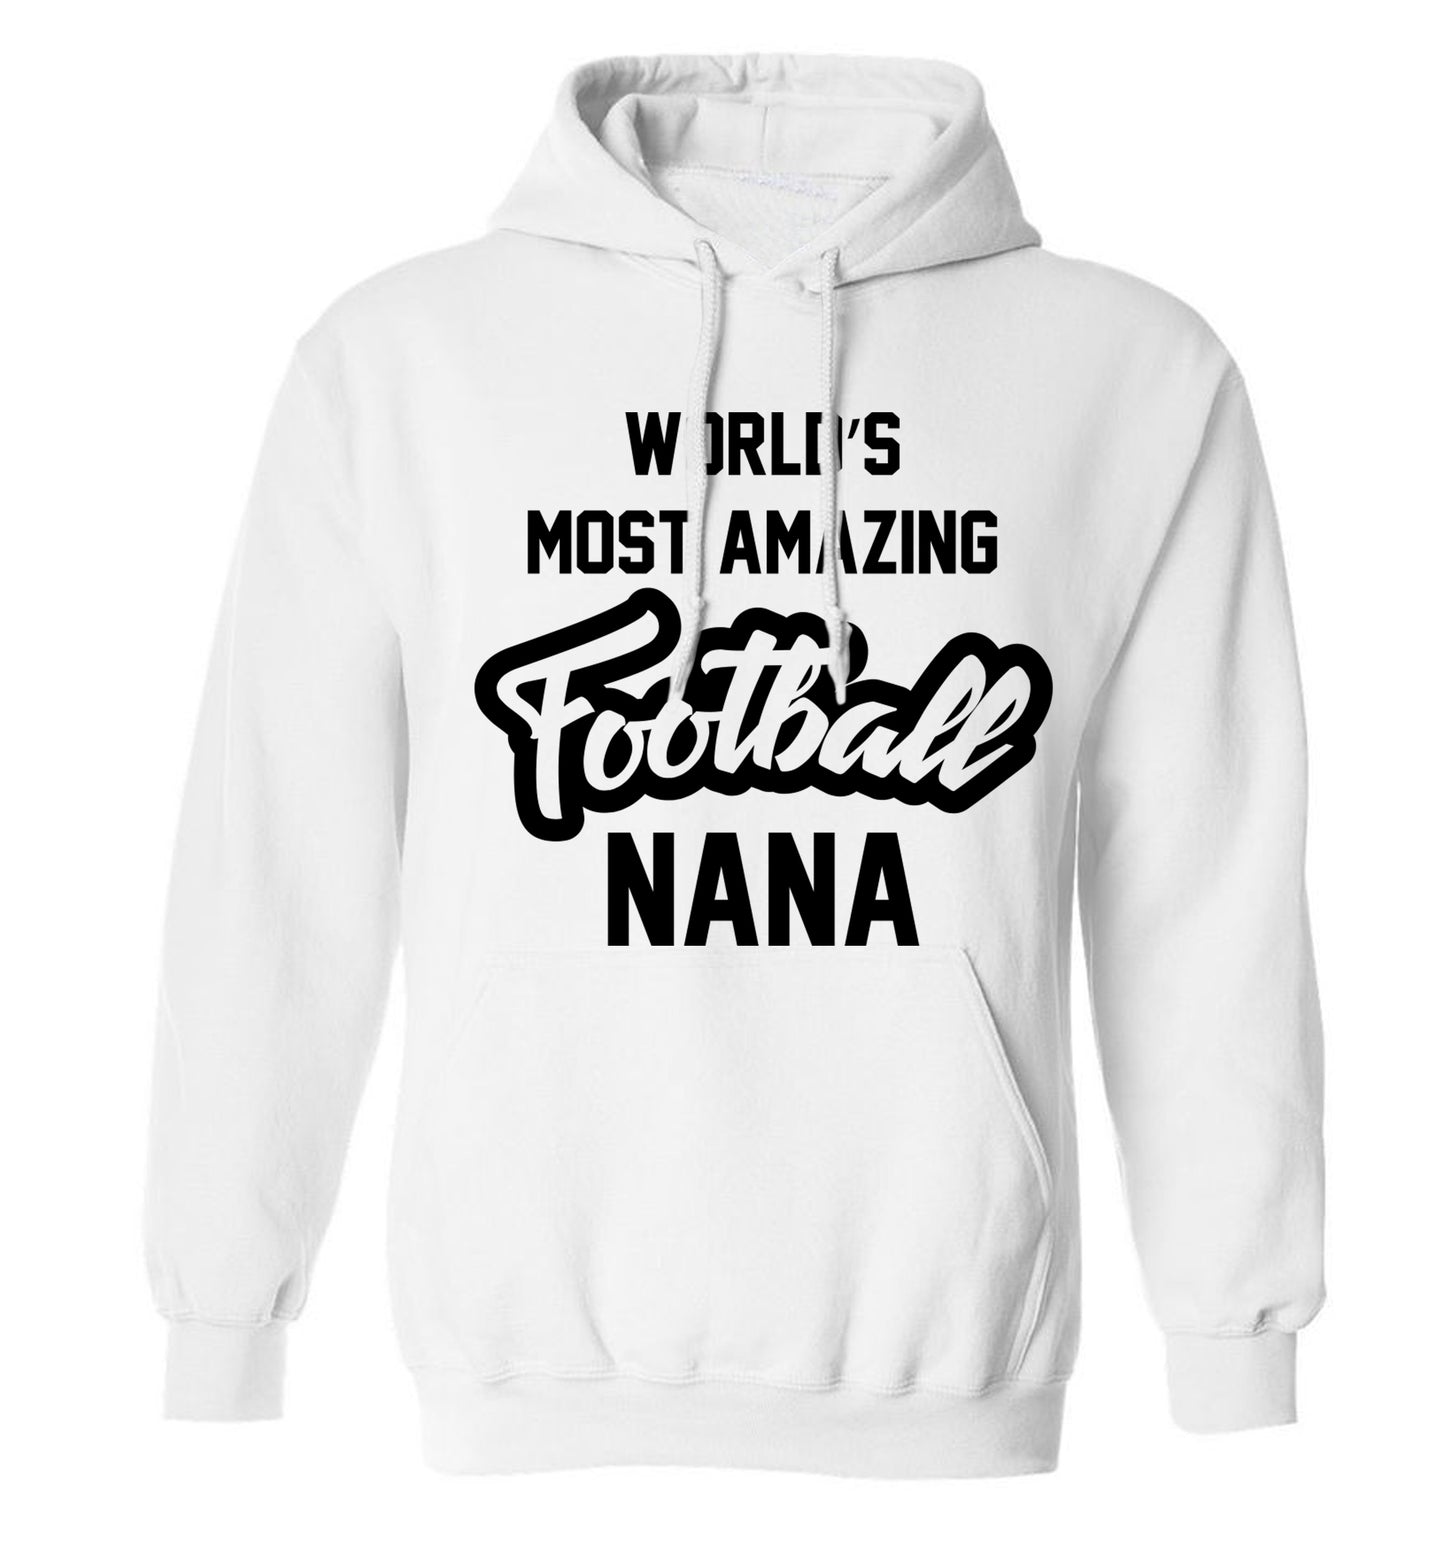 Worlds most amazing football nana adults unisexwhite hoodie 2XL